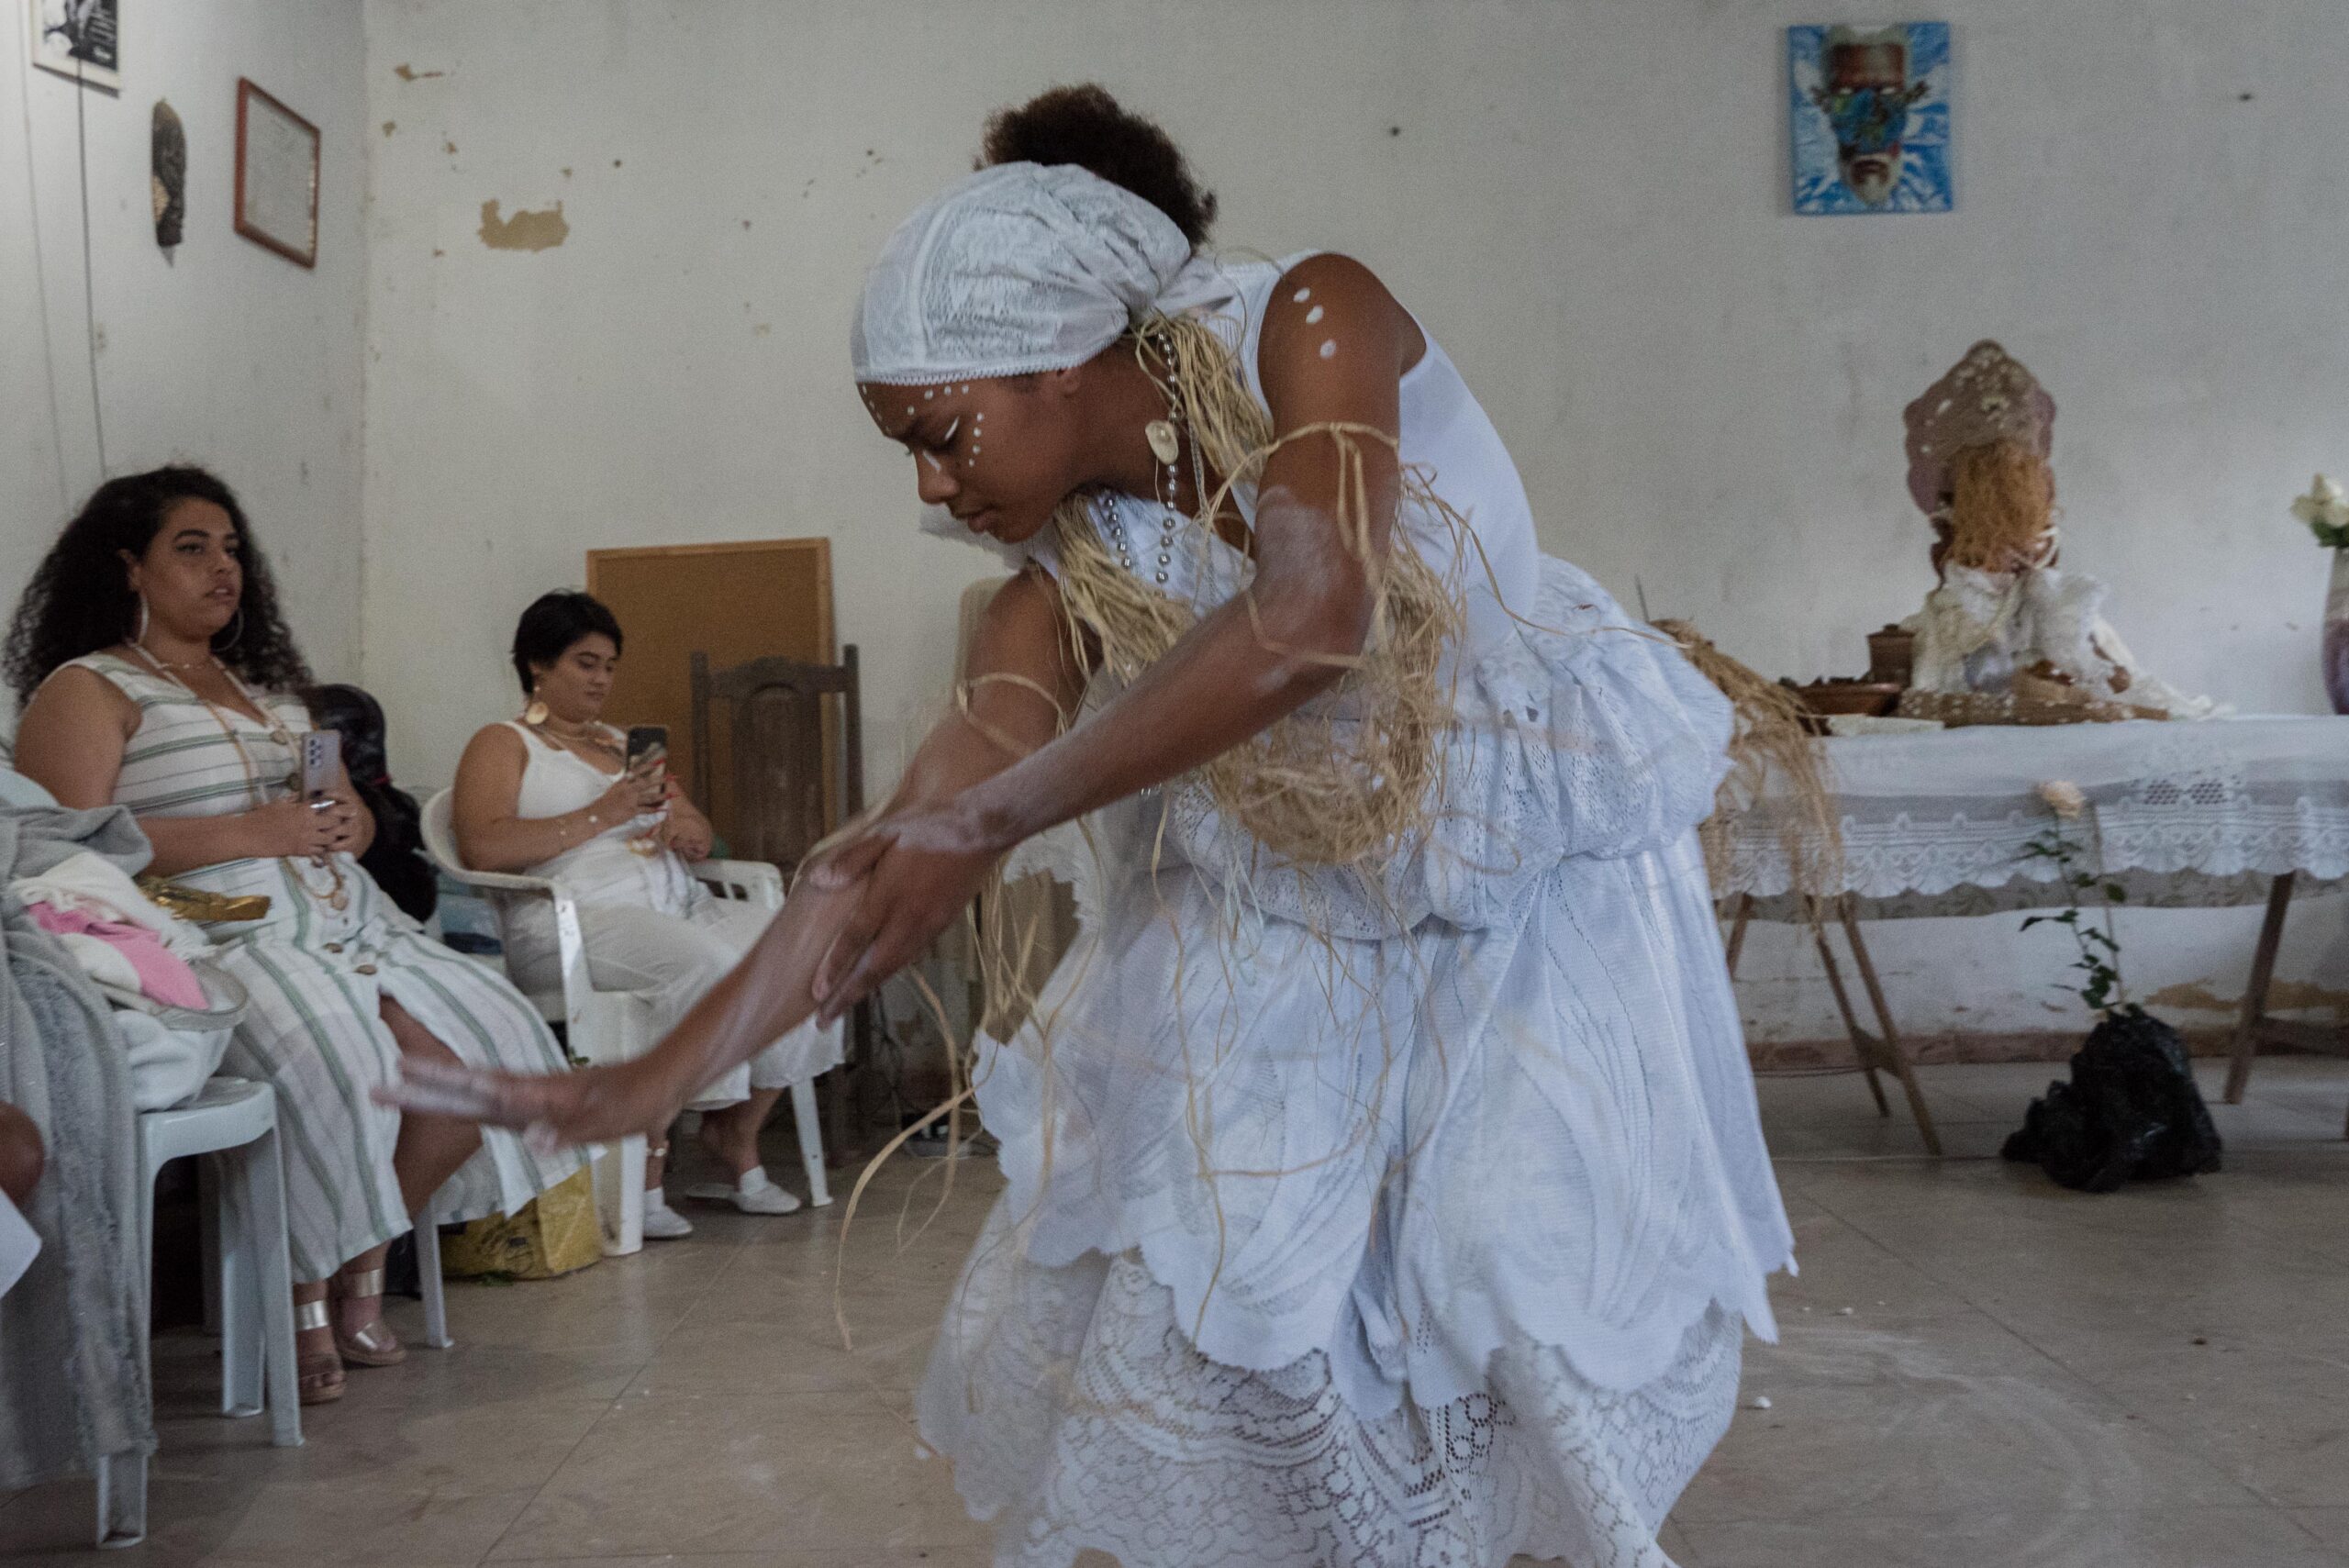 O balé de Louvação a Nanã (bailarina Ana Beatriz), foi uma das atrações artísticas que aconteceu no Terceiro Encontro do Jardim das Ervas Sagradas. Foto: Bárbara Dia/RioOnWatch